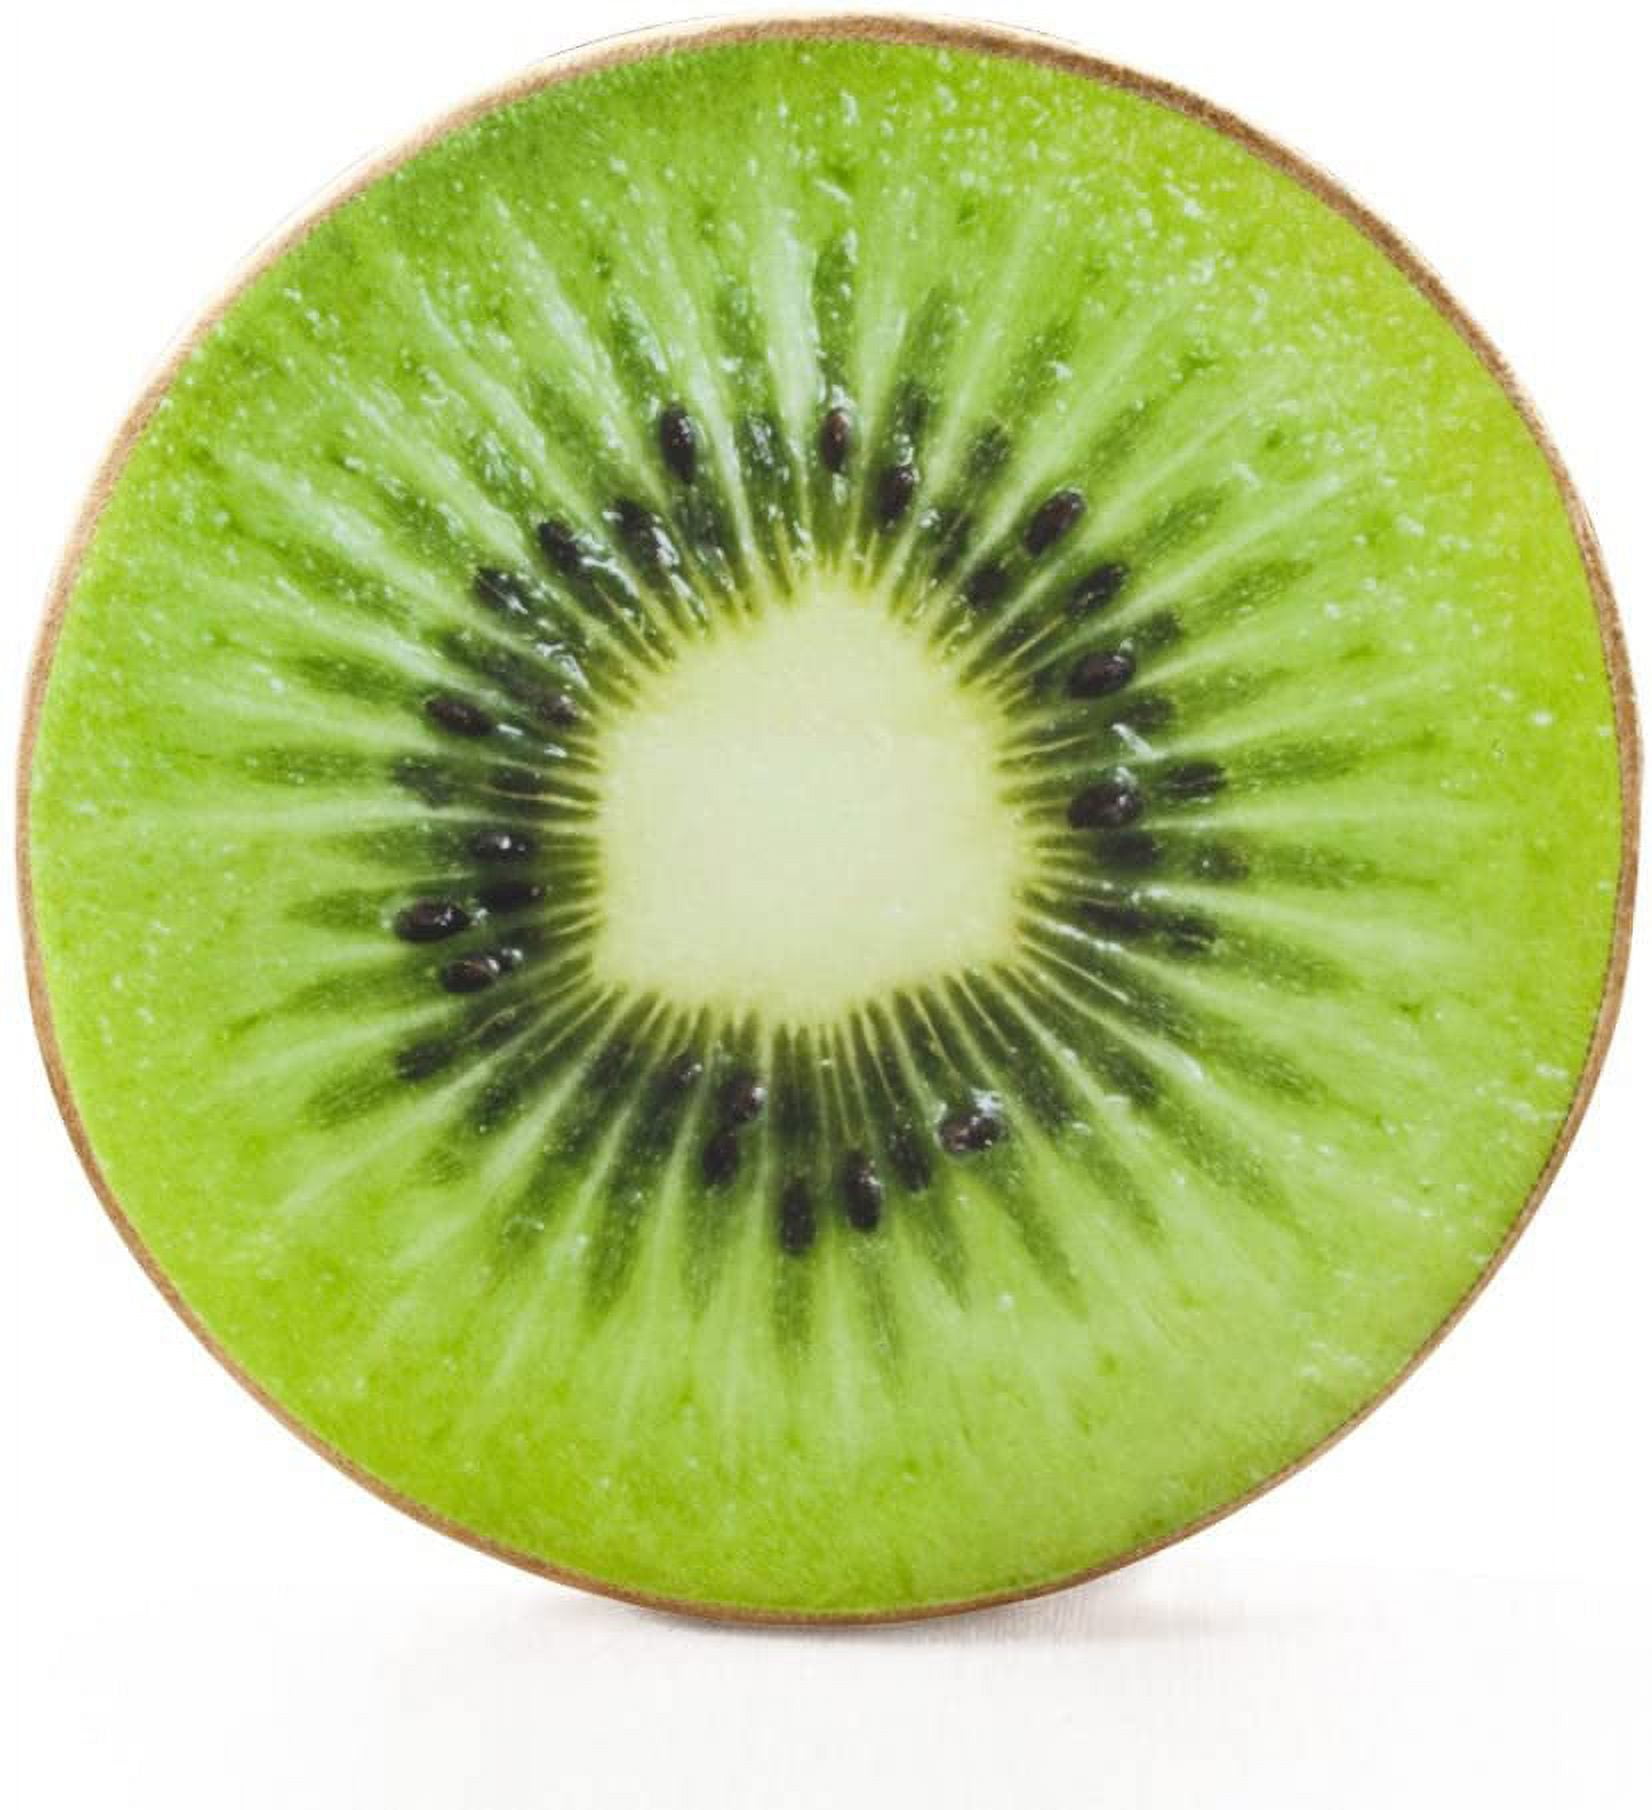 Coussin fruit, Mr. Kiwi